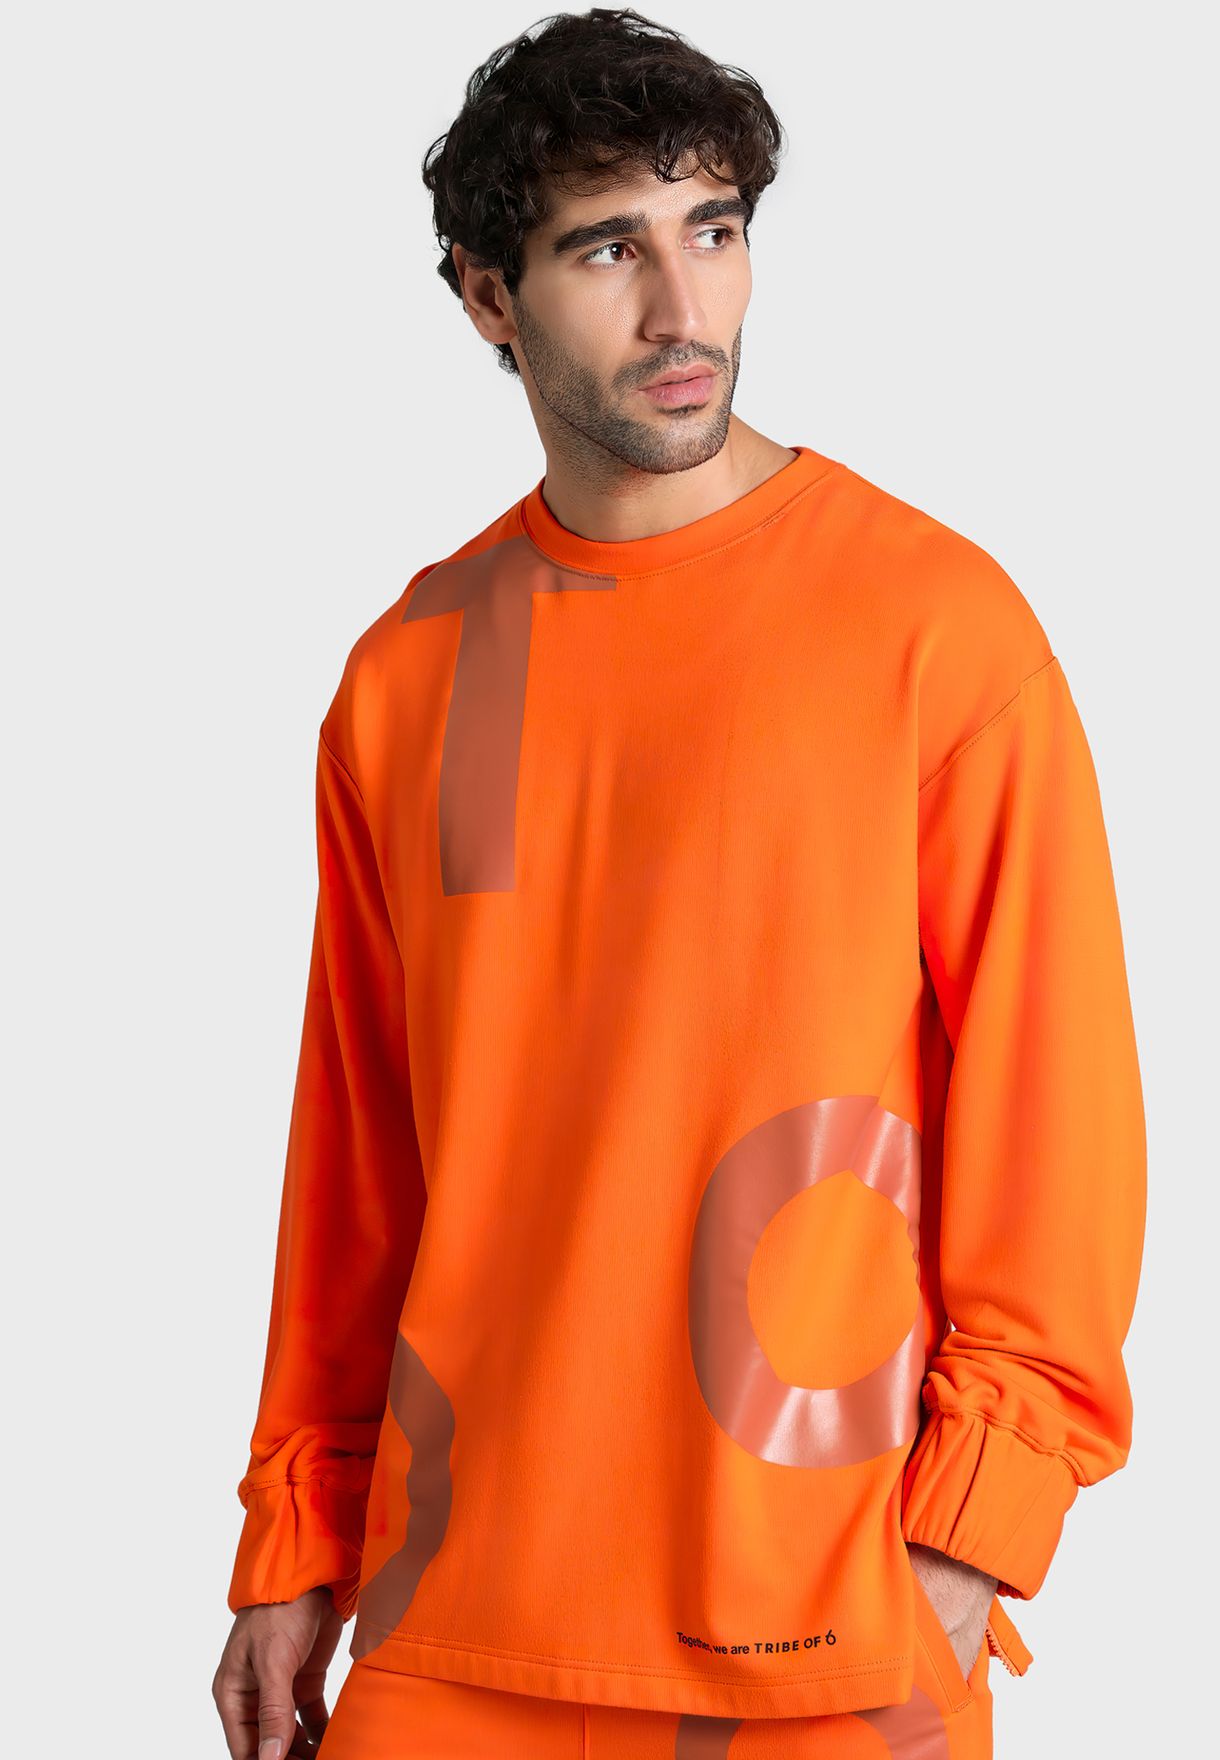 Bilal Open Side Sweatshirt